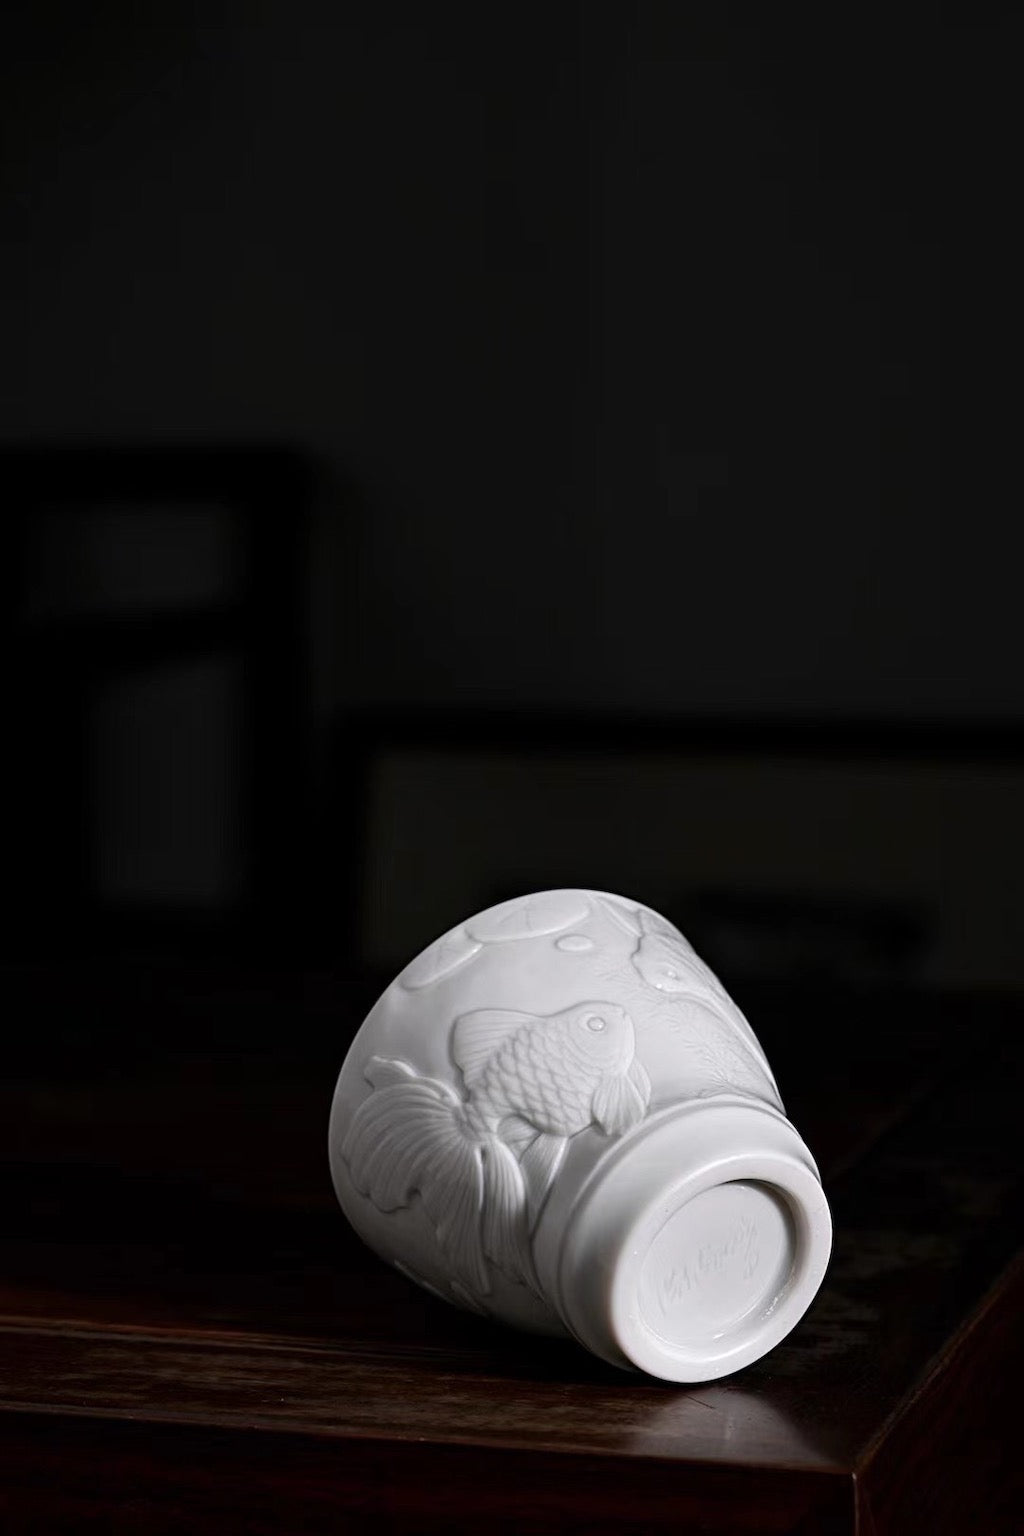 Hand Sculpture Vintage Style Blanc De Chine Gongfu Teacup | Best Ceramics